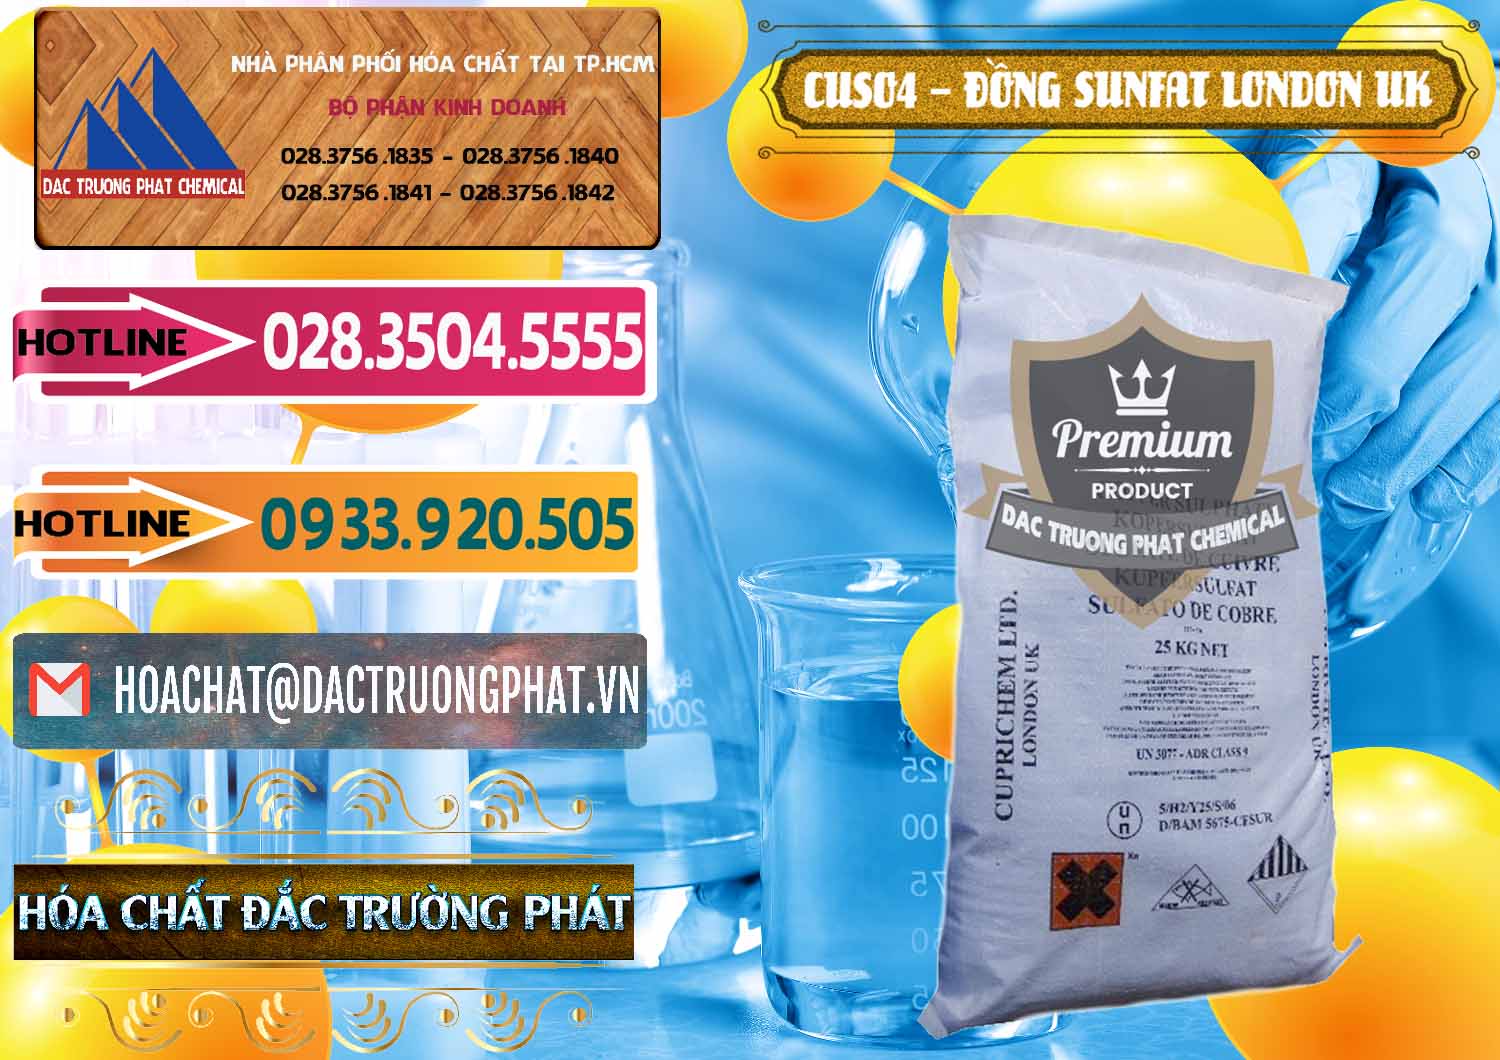 Công ty bán _ cung cấp CuSO4 – Đồng Sunfat Anh Uk Kingdoms - 0478 - Cty phân phối - cung ứng hóa chất tại TP.HCM - dactruongphat.vn